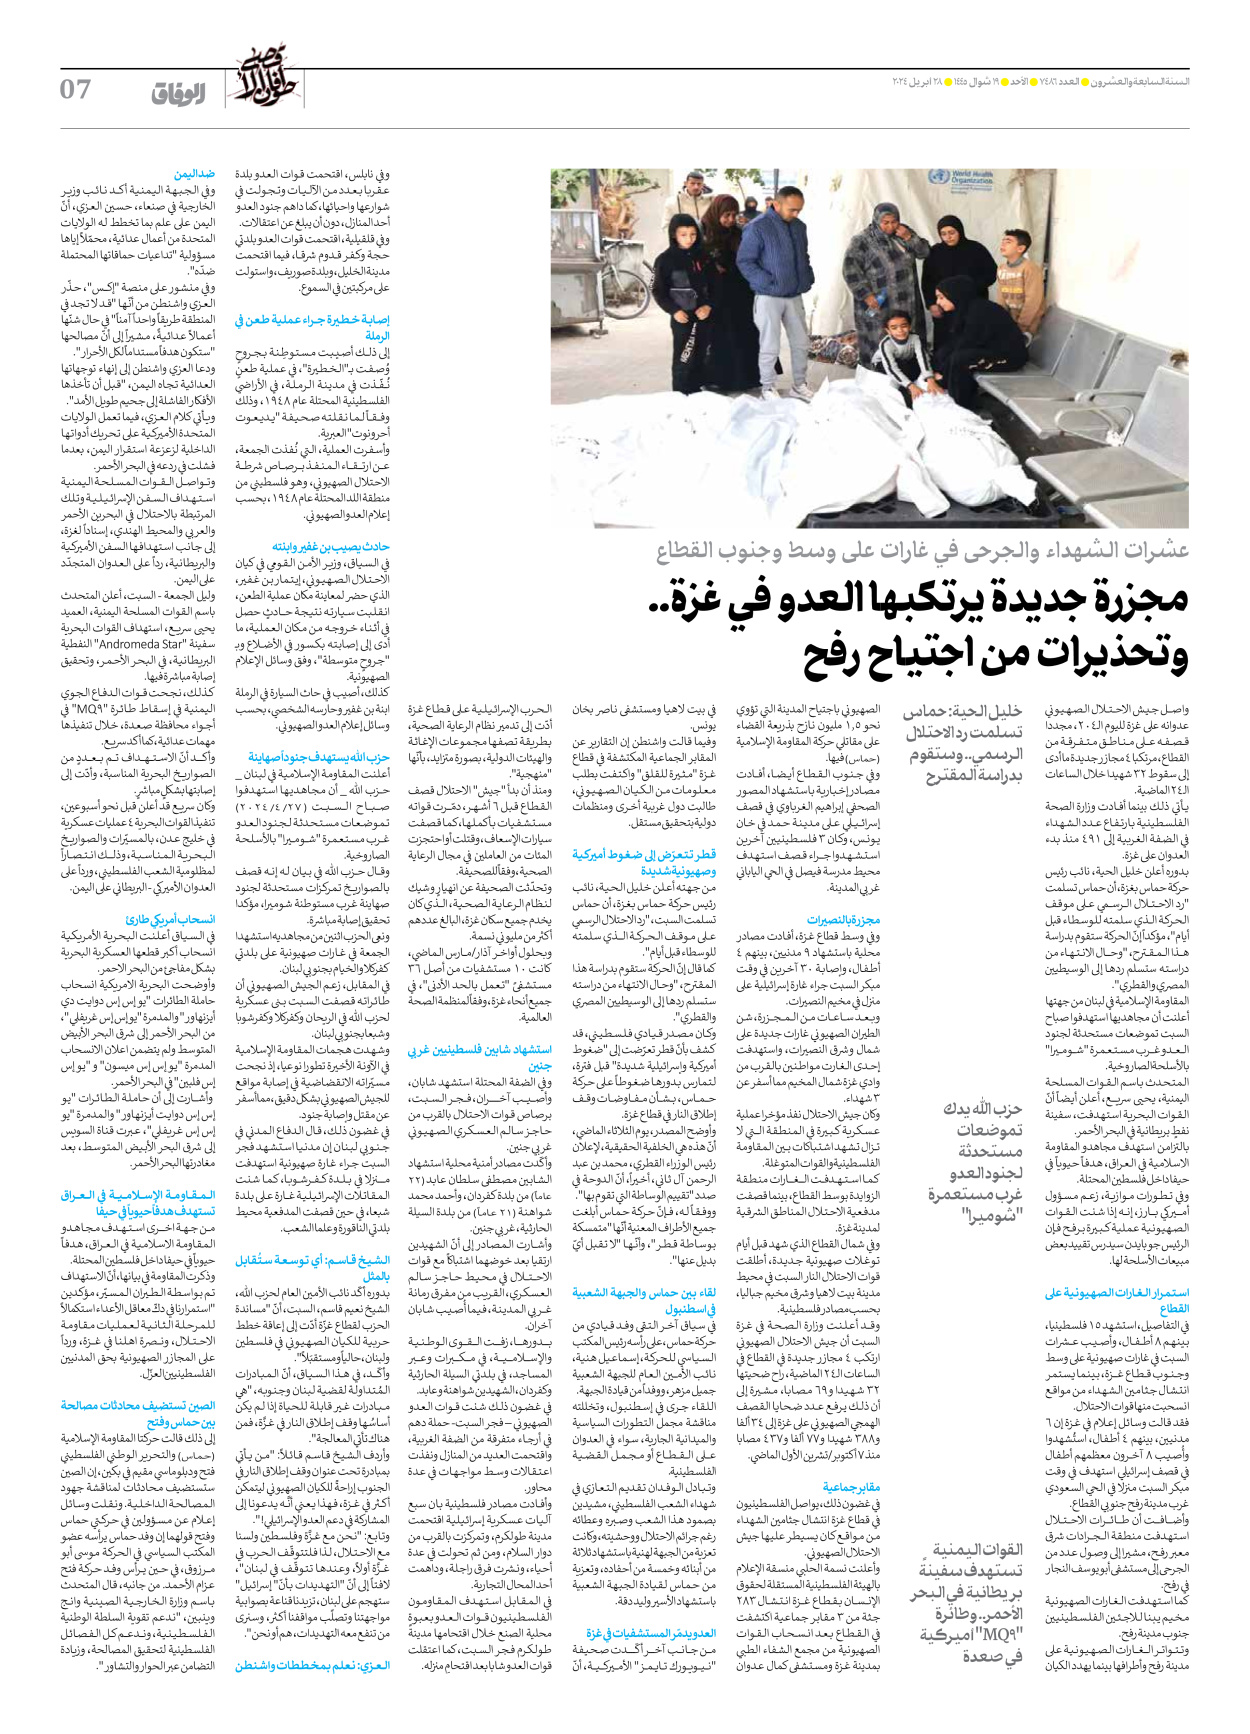 صحیفة ایران الدولیة الوفاق - العدد سبعة آلاف وأربعمائة وستة وثمانون - ٢٨ أبريل ٢٠٢٤ - الصفحة ۷